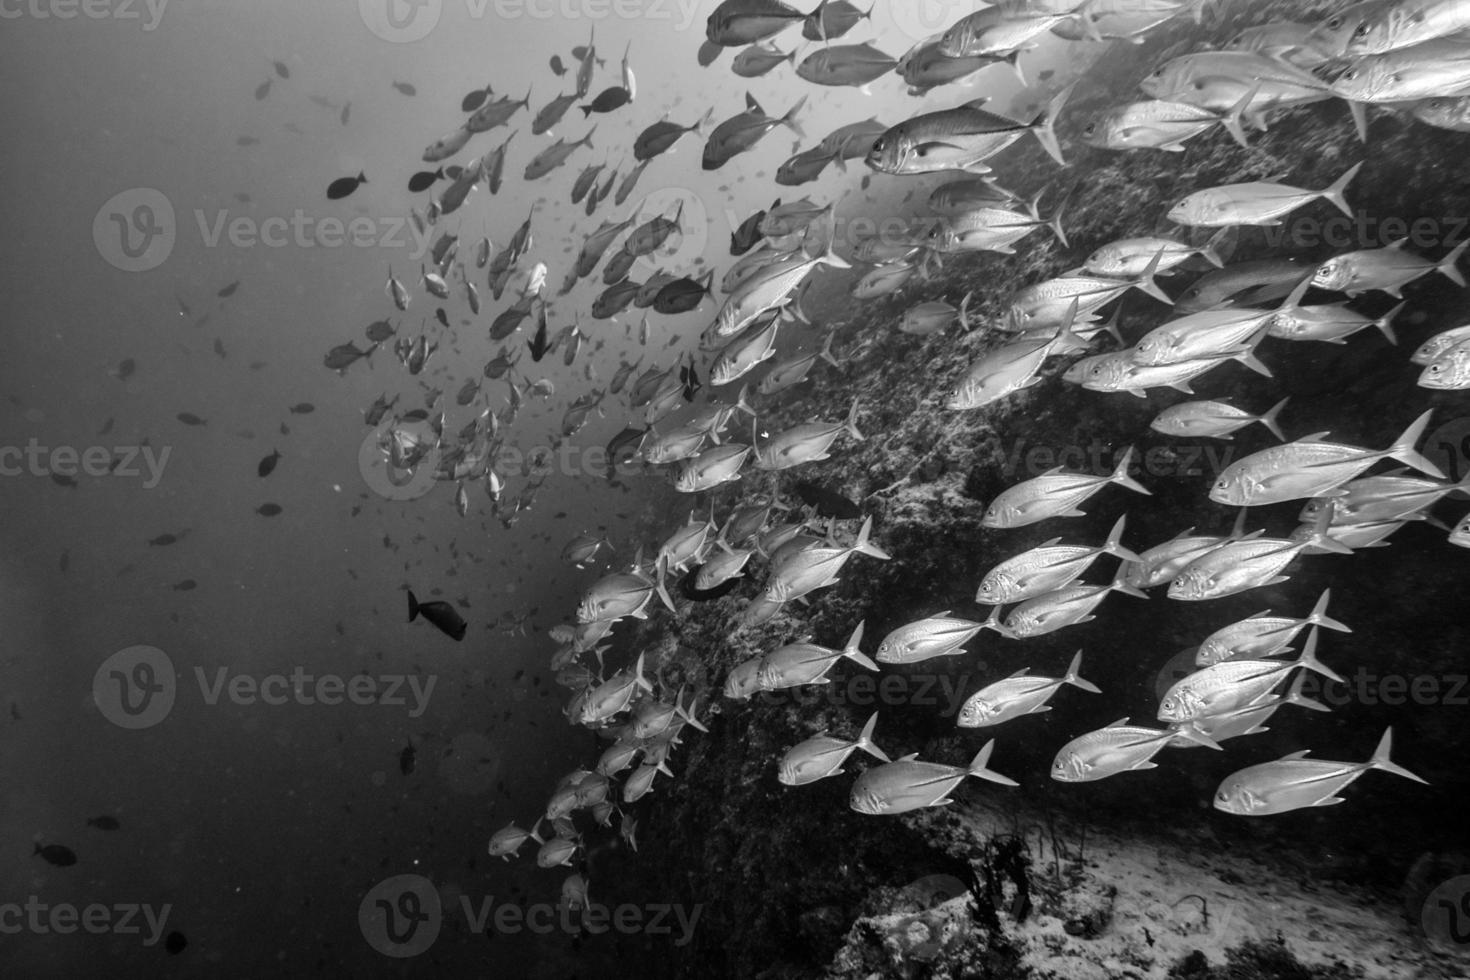 inuti en skola av fisk under vattnet i svart och vit foto